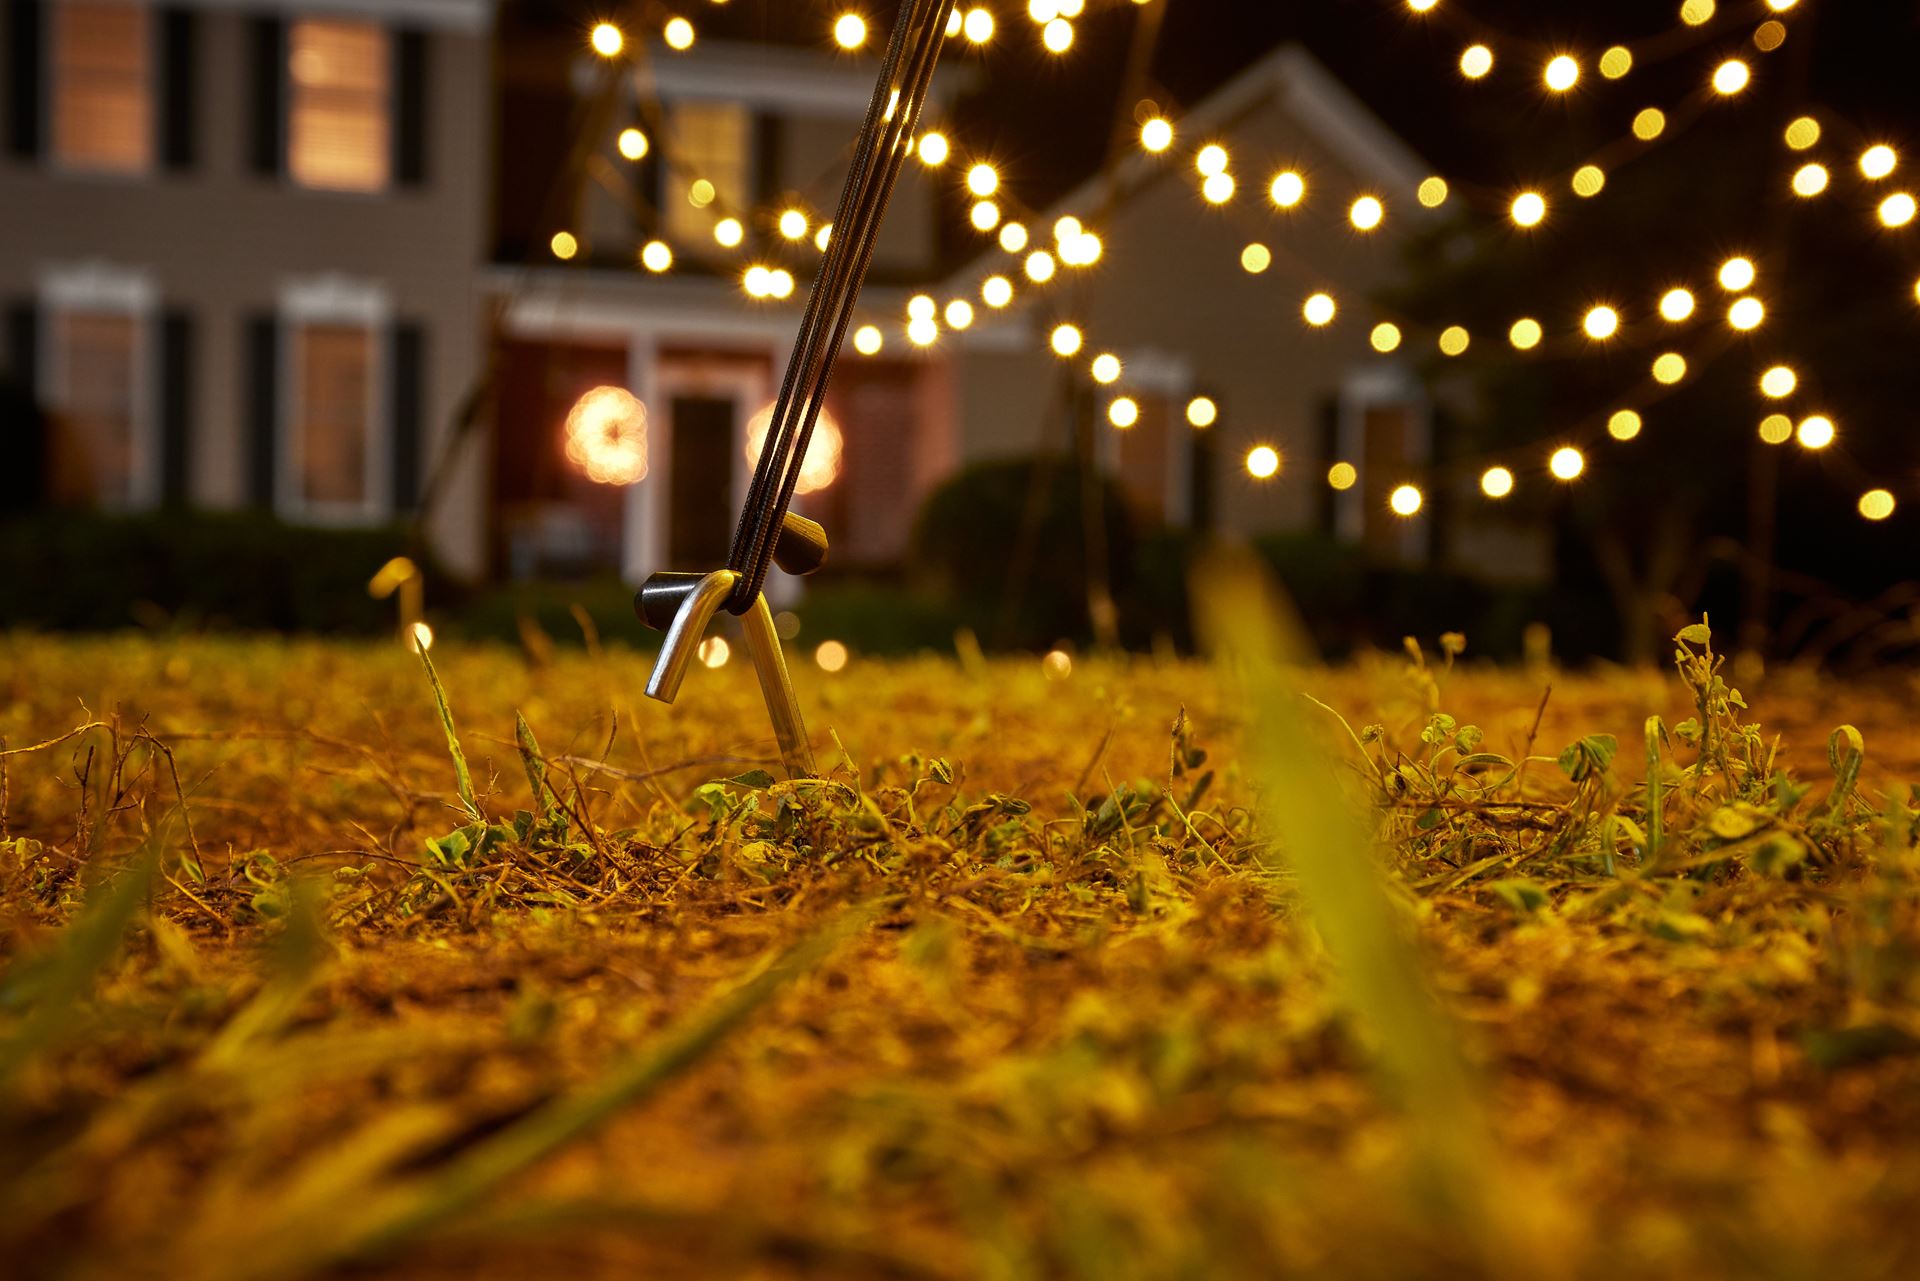 Fairybell-kerstverlichting-kerstboom-buiten-met-vlaggenmast-200cm-hoog-300-LED-lampjes-in-warmwitte-